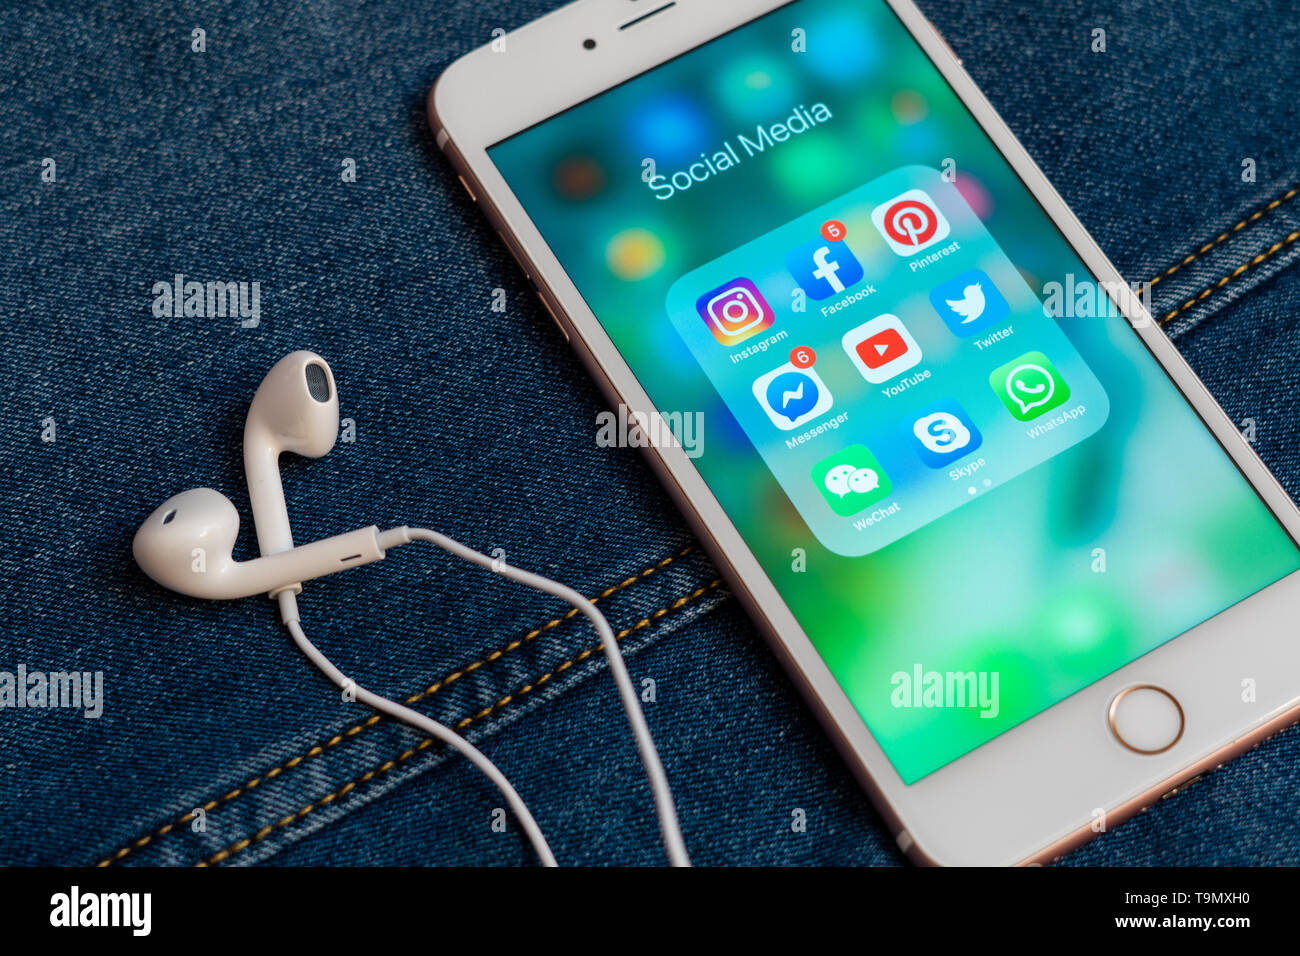 Weiß Apple iPhone mit Symbolen der sozialen Medien: Instagram, Youtube, Facebook, Twitter, Skype, whatsapp Anwendungen auf dem Bildschirm. Marketing Konzept Stockfoto